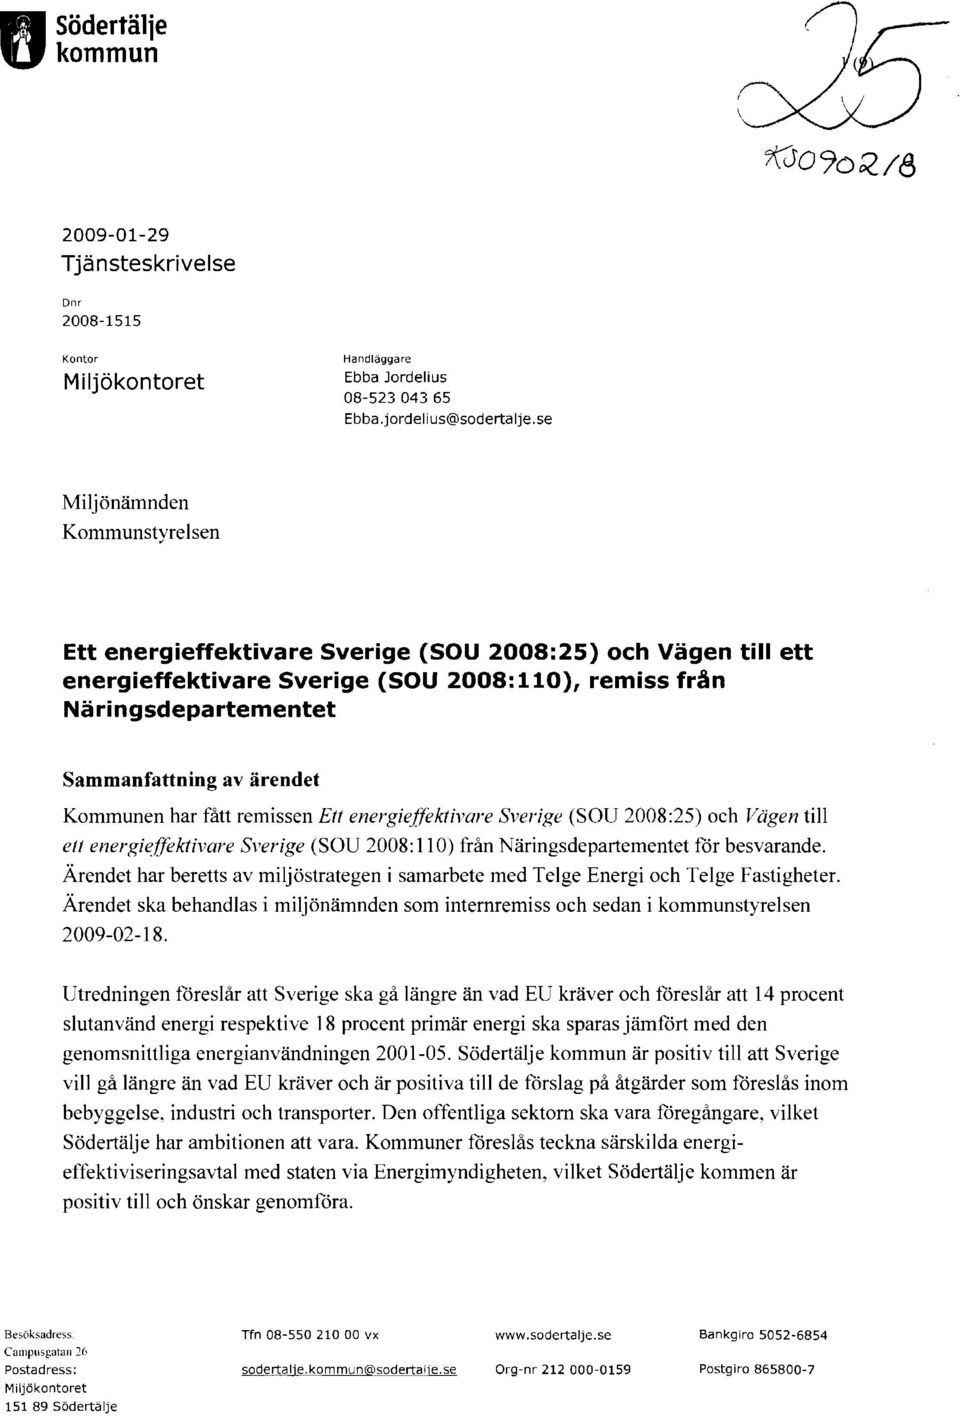 Kommunen har fått remissen Ett energieffektivare SveriRe (SOU 2008:25) och Vägen till ett energieffektivare Sverige (SOU 2008: Il O) från Näringsdepartementet för besvarande.